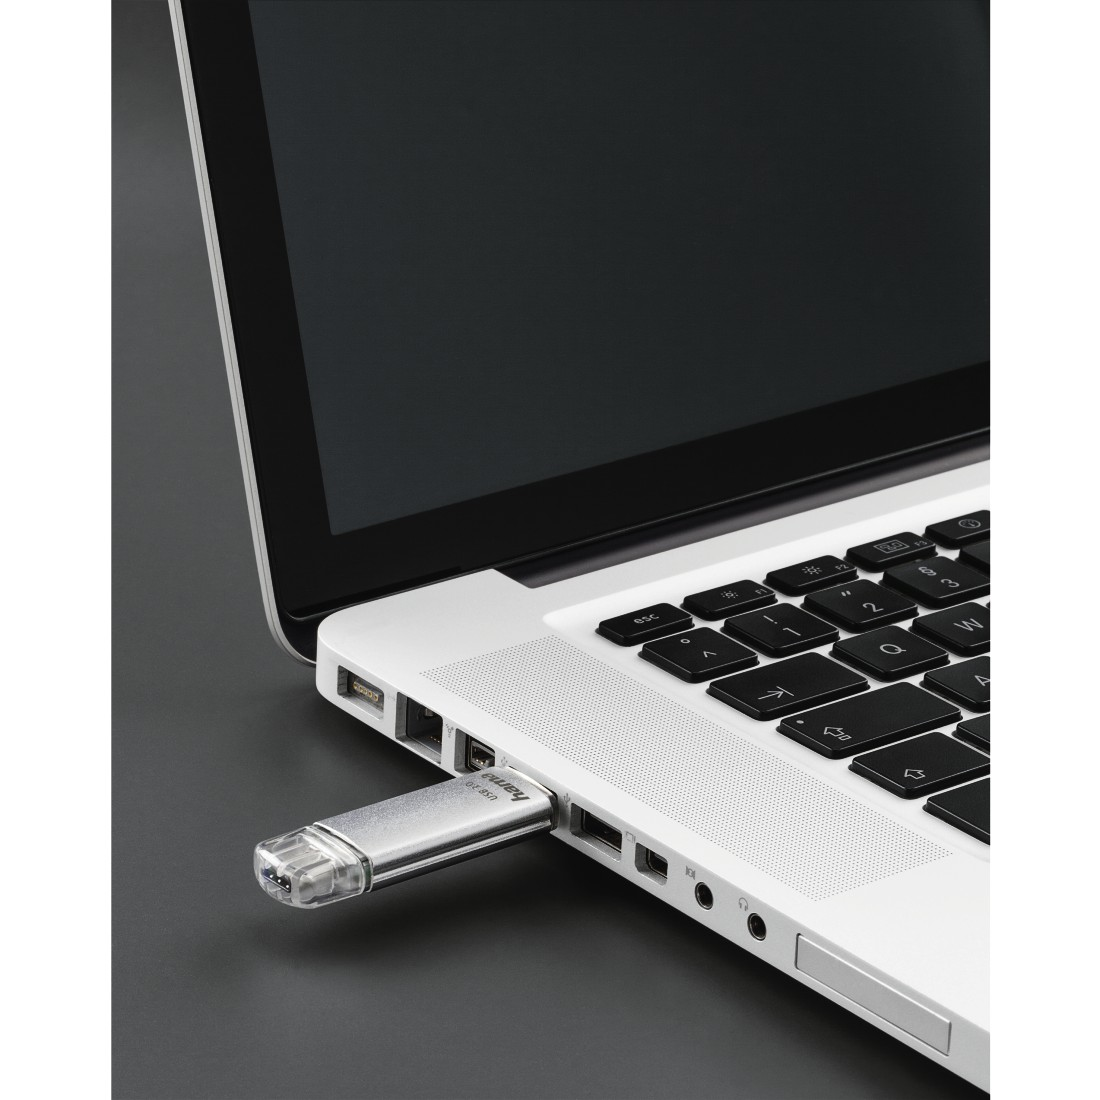 HAMA MB/s, C-Laeta 64 40 USB-Stick, Silber GB,